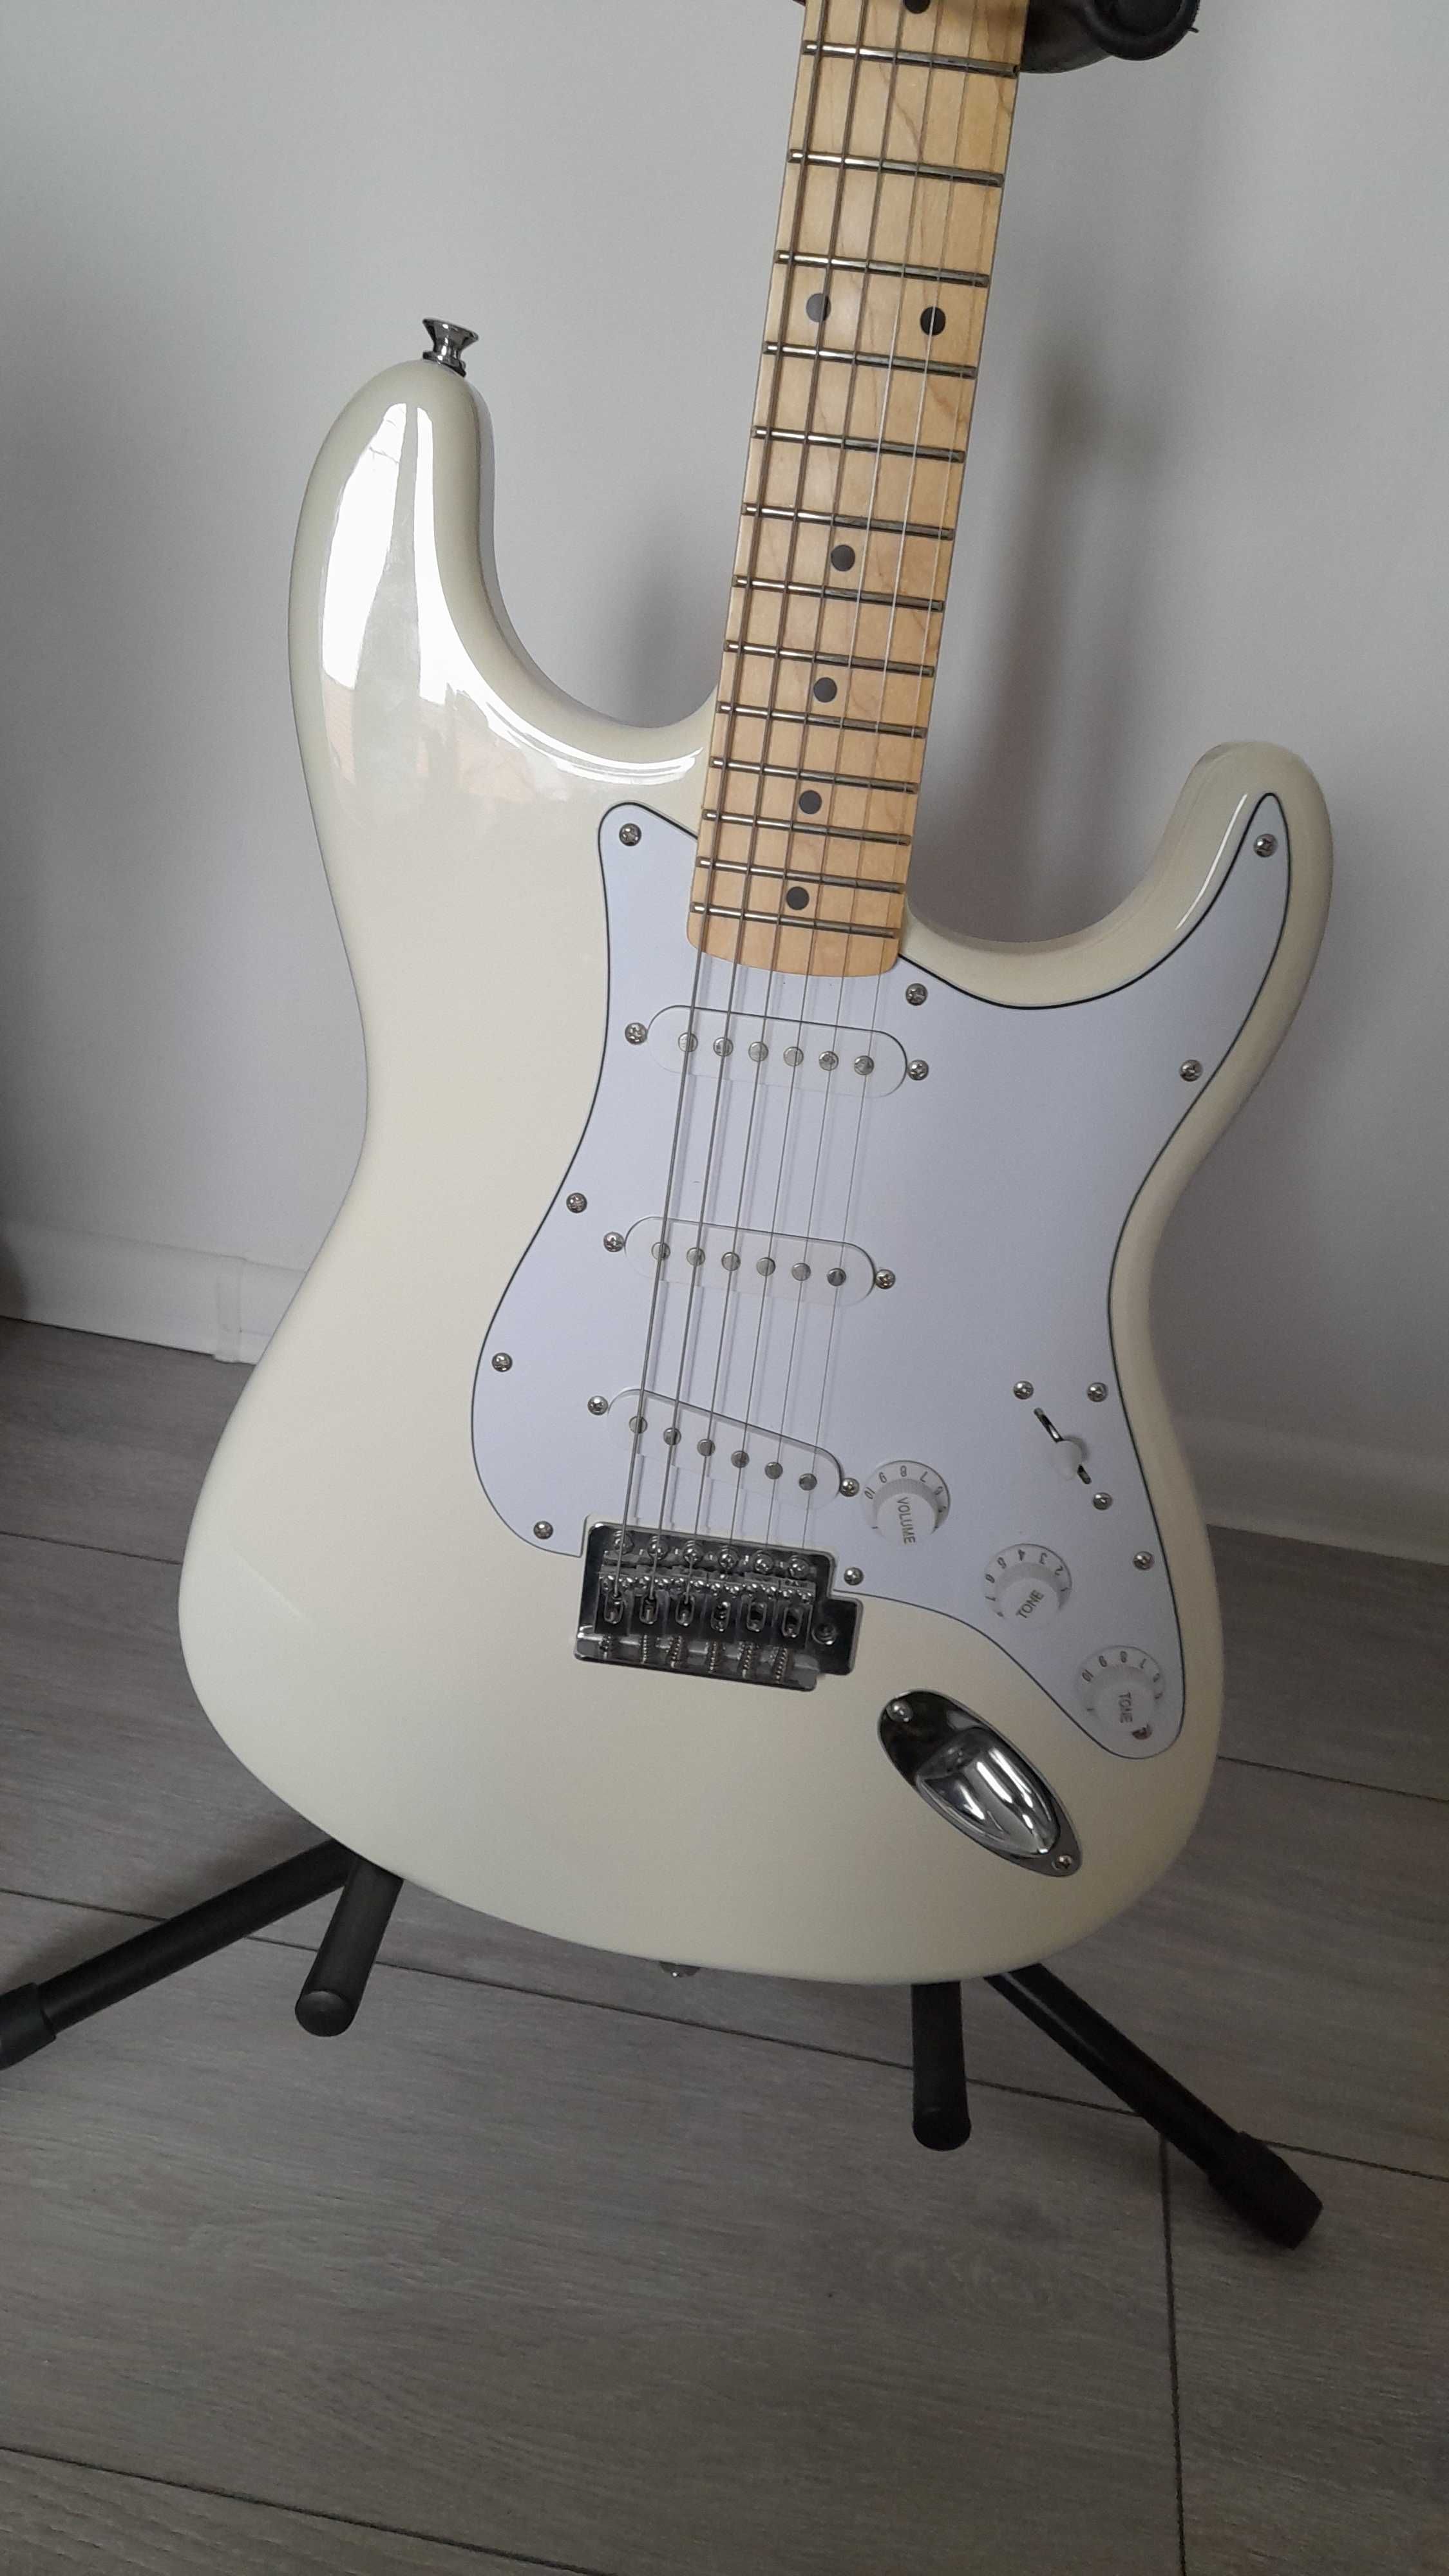 Gitara elektryczna Squier by fender stratocaster biały SSS affinity